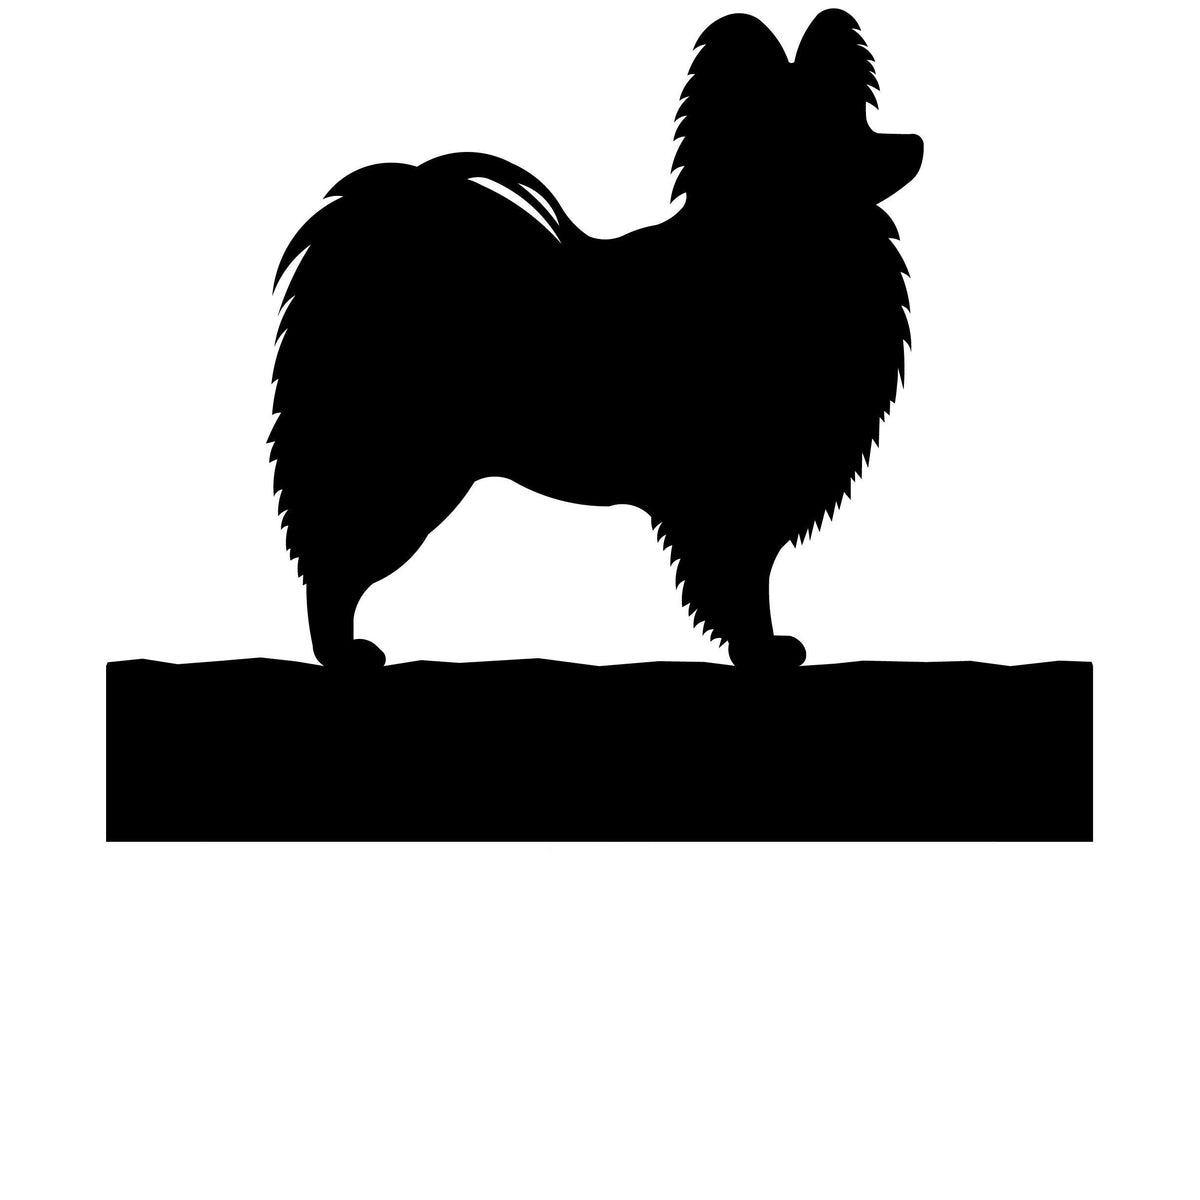 Pomeranian dog address stake